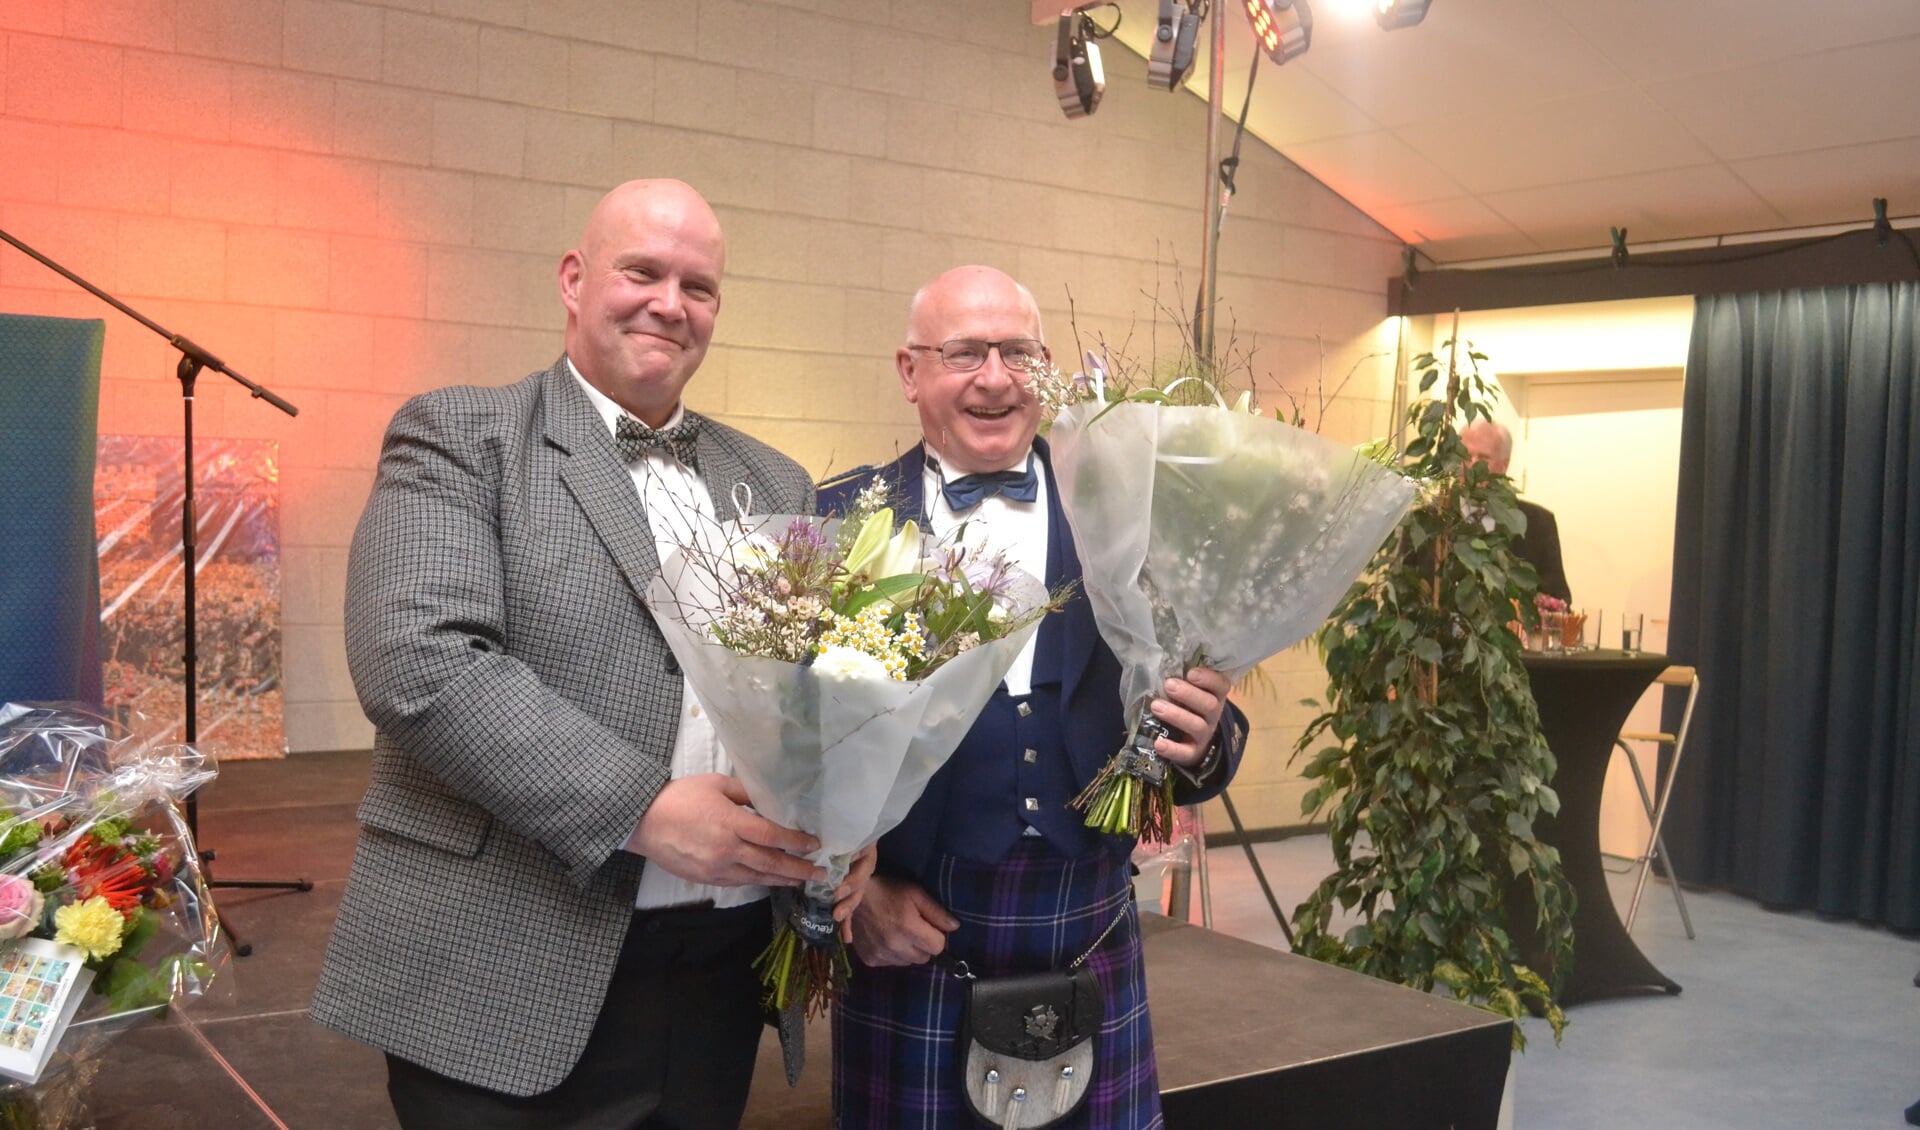 Oprichter Hans Beerten (r) en voorzitter Johan van Doesburg van de Highland Valley Pipes en Drums ontvangen bloemen tijdens het jubileum. Foto: Jaime Lebbink